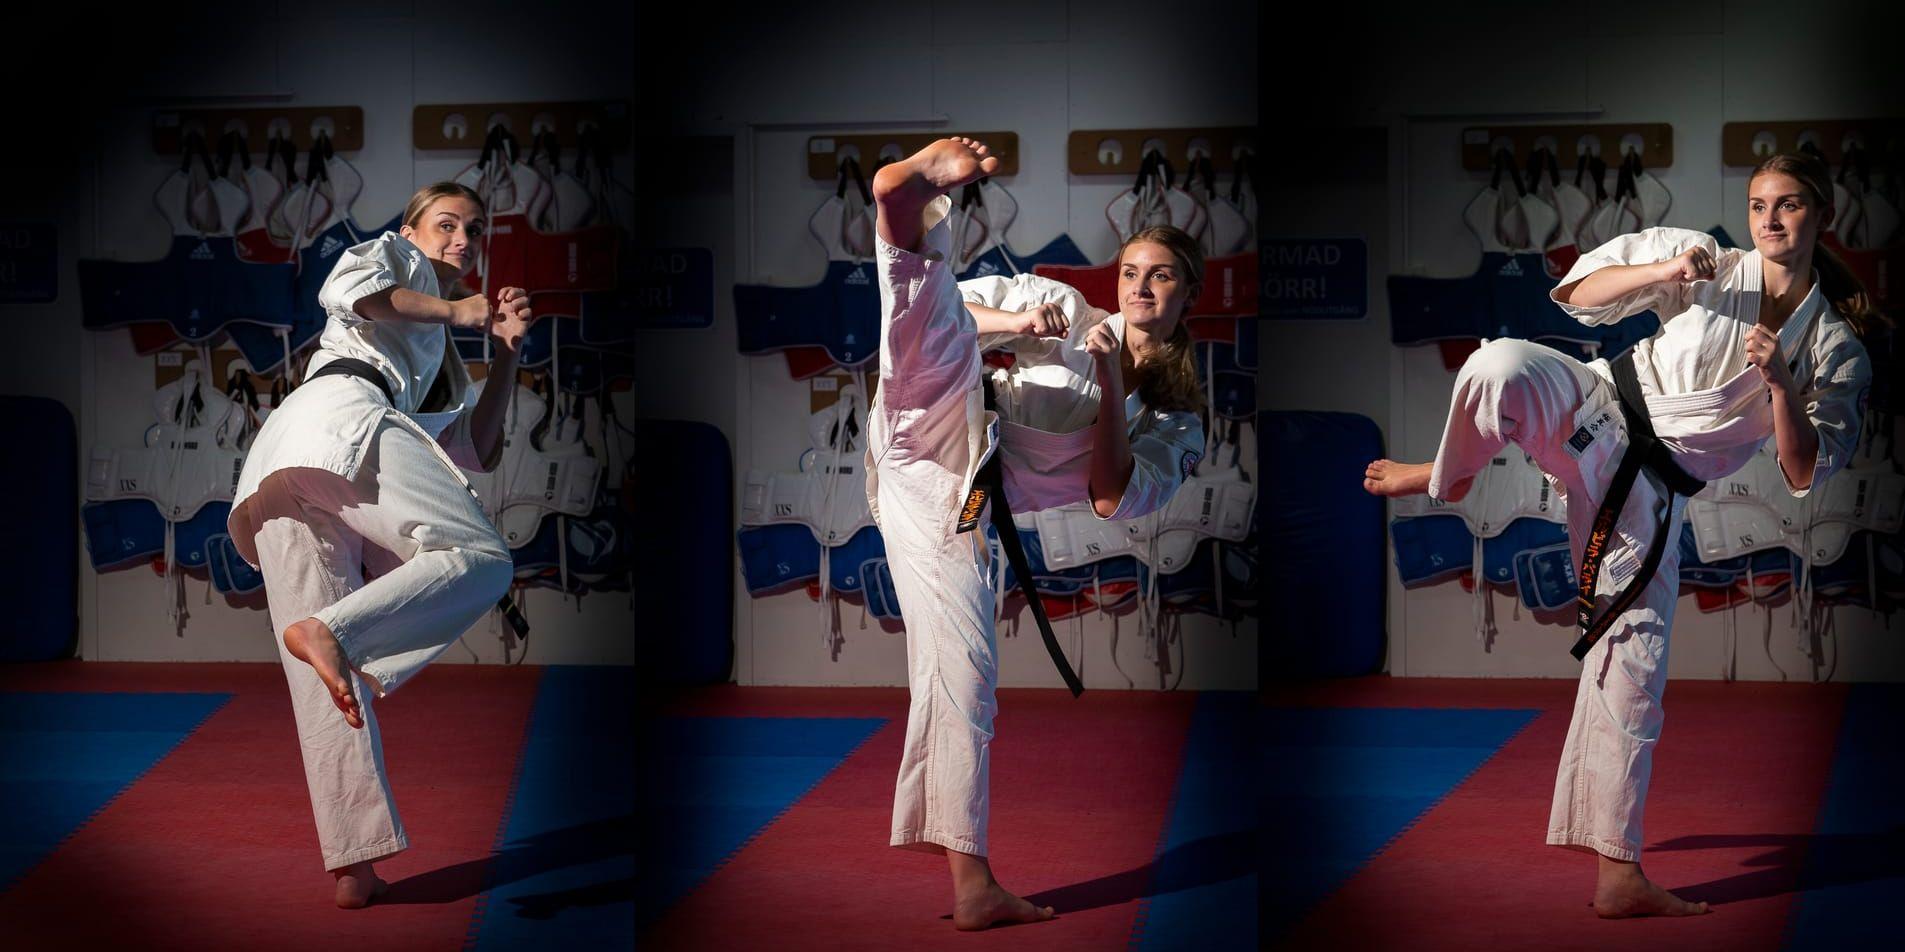 Kyokushin karate är en fullkontaktssport där sparkar och slag är tillåtna. Att slå mot huvudet är däremot inte tillåtet.